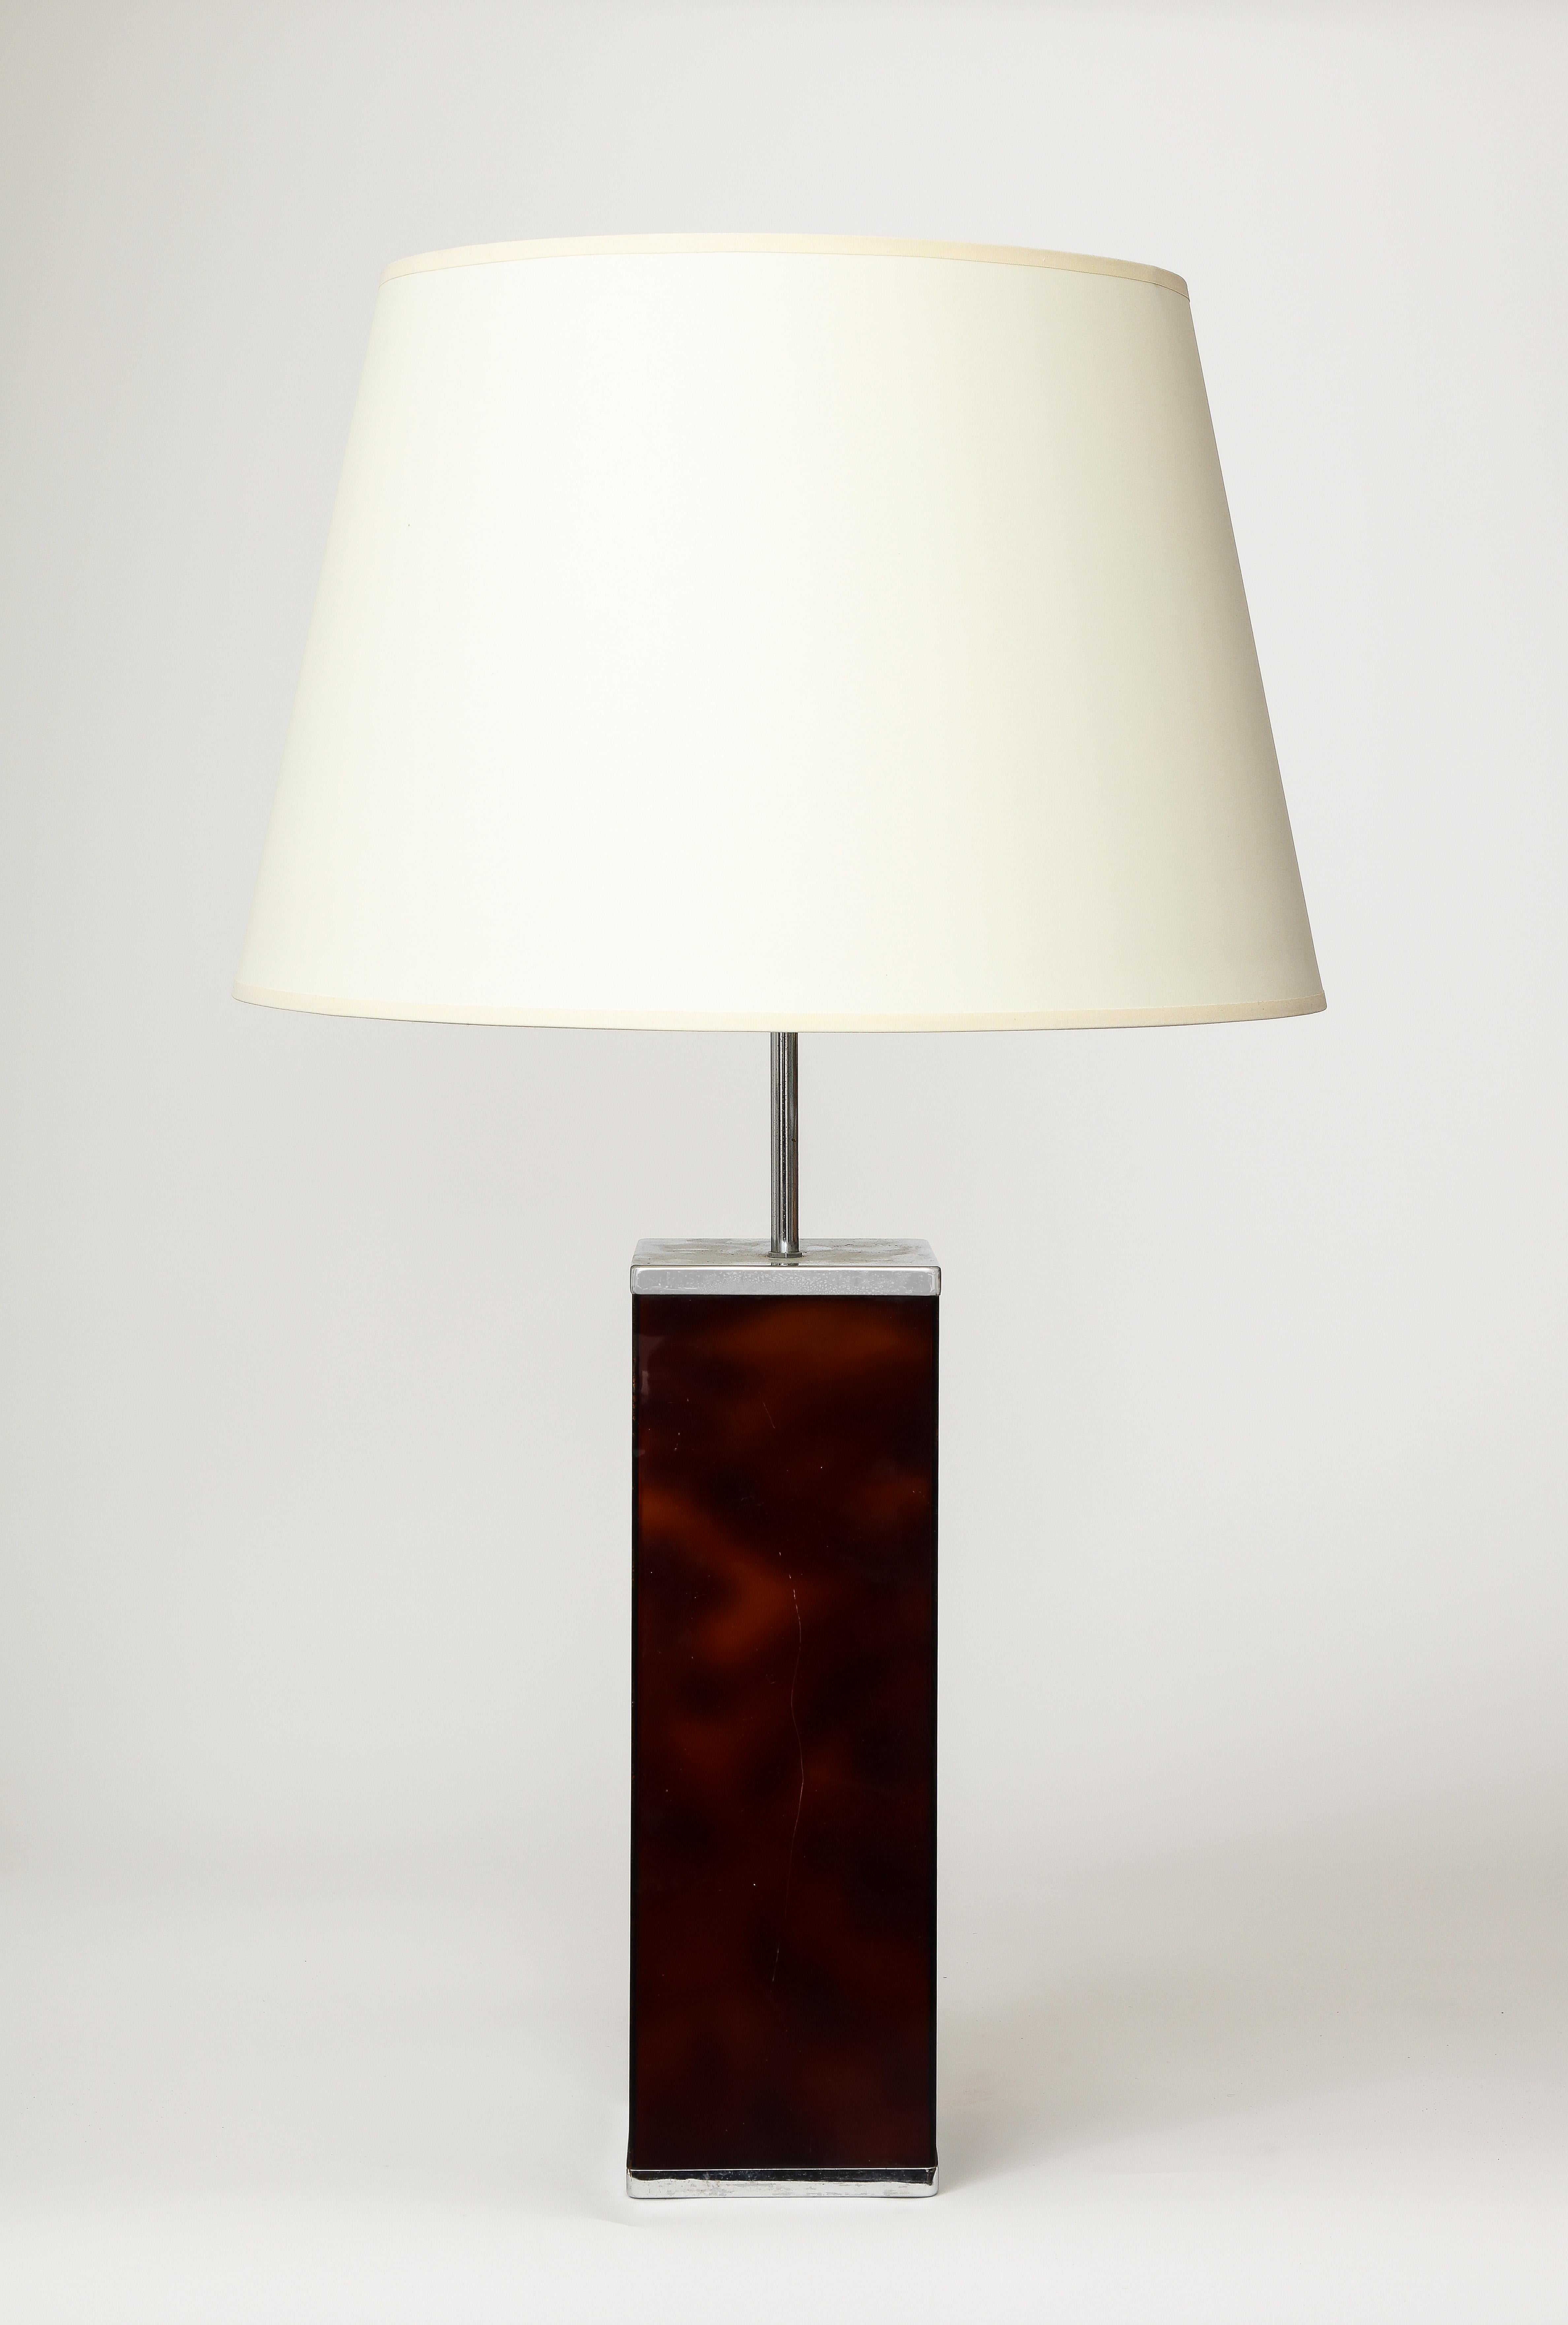 Lampe de table moderne en résine coulée et métal chromé par Philippe Cheverny.

Cette lampe de table a été récemment recâblée avec un cordon de soie torsadée noire de 8 pieds.

Hauteur totale : 30